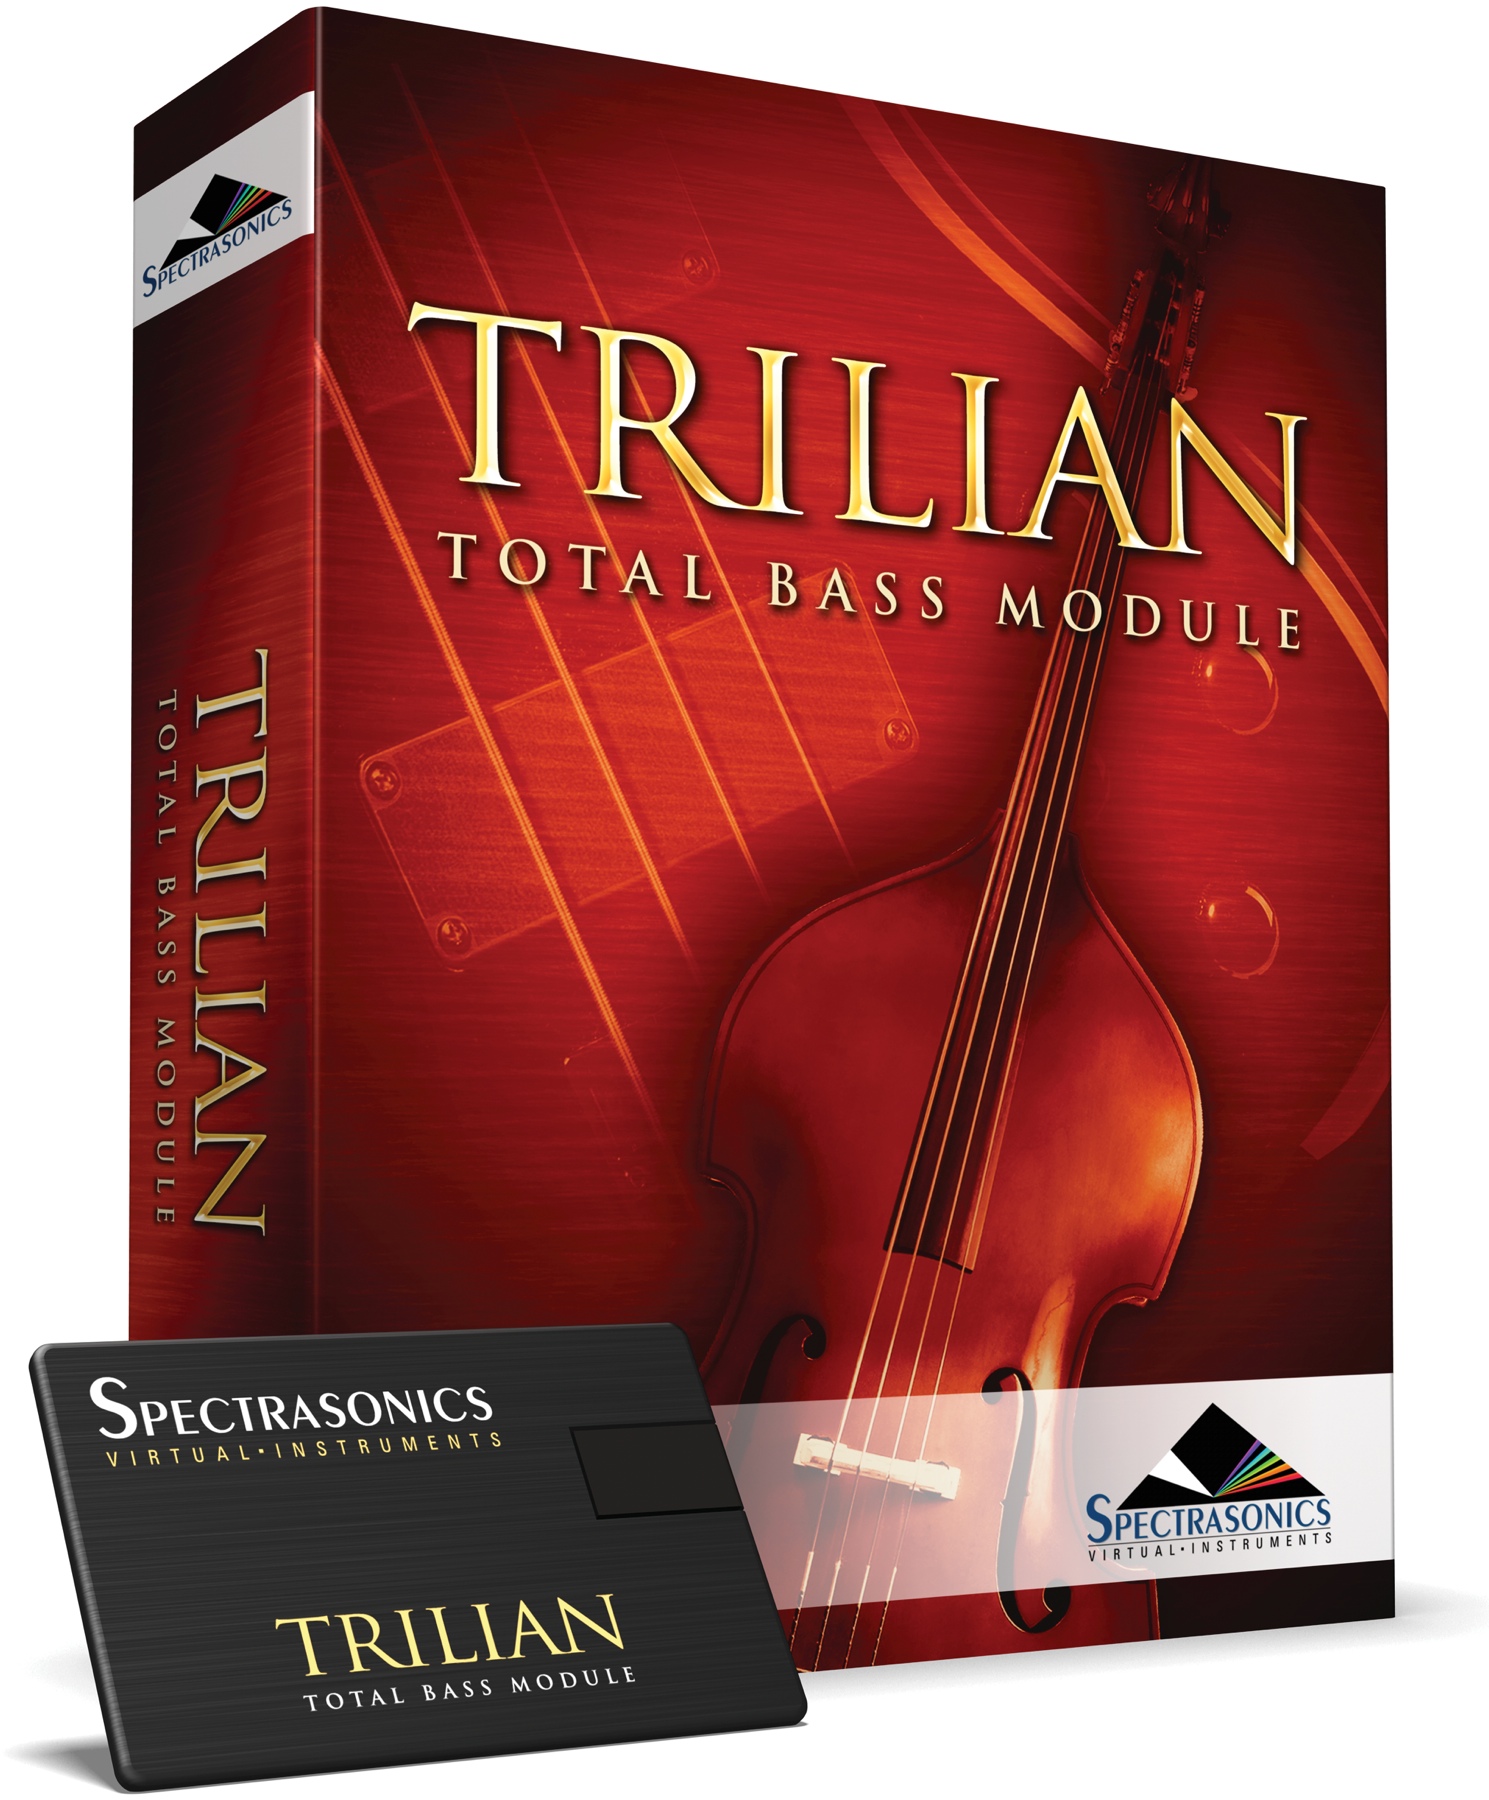 6. Trilian 1.5: Total Bass Module by Spectrasonics (Paid)